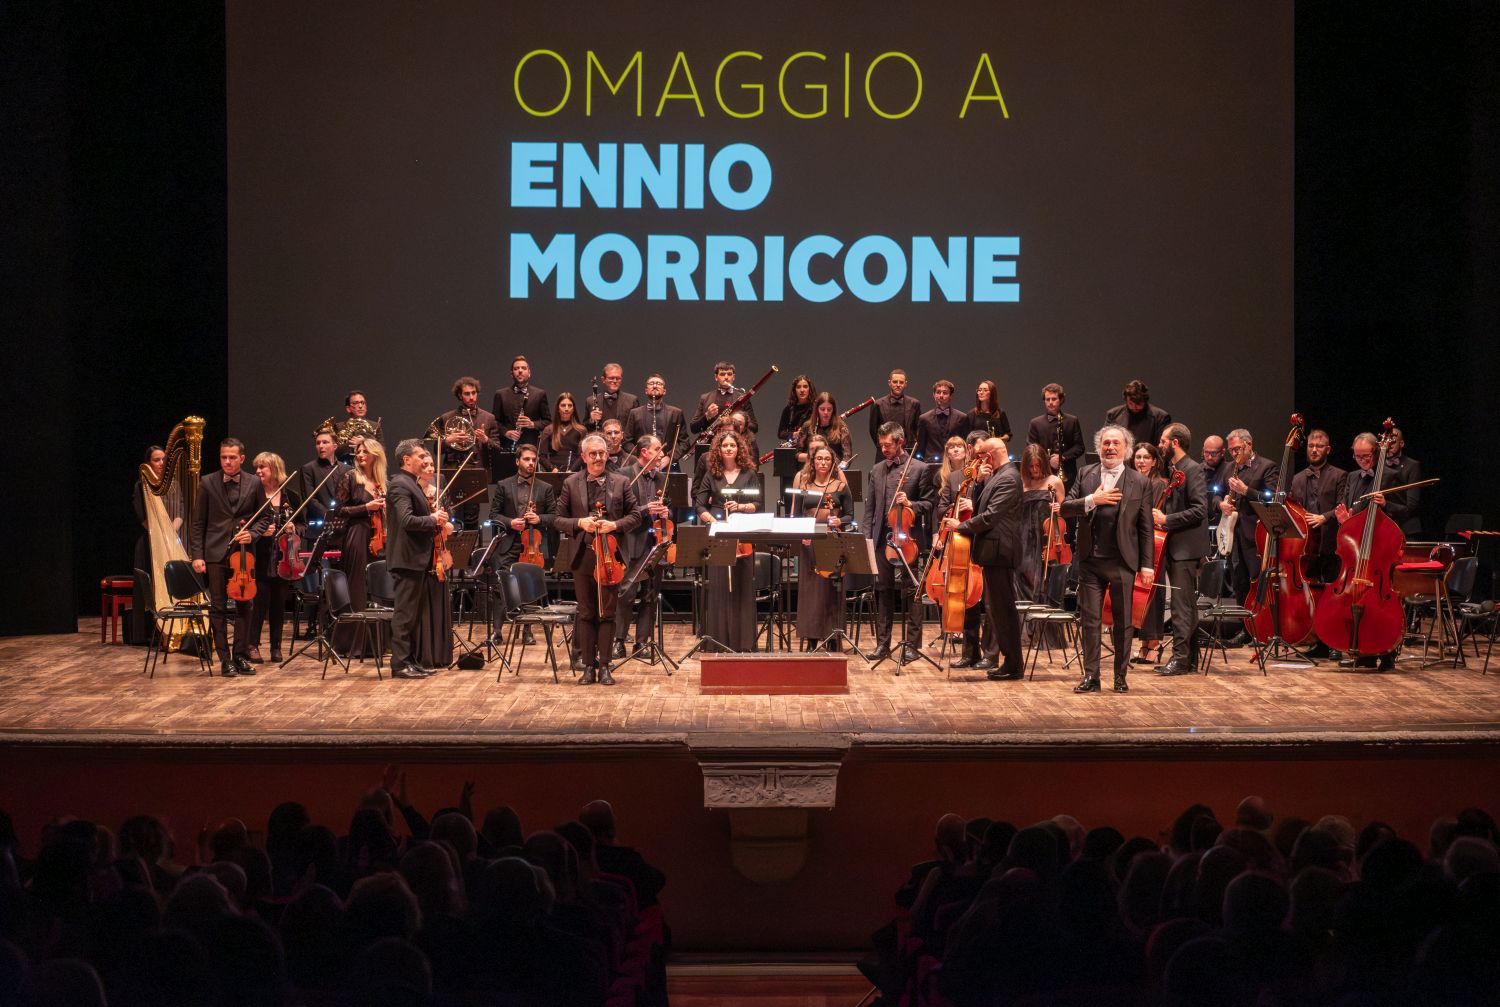 Il 17 febbraio raddoppia l’appuntamento con il maestro Diego basso e il suo “Omaggio a Ennio Morricone”